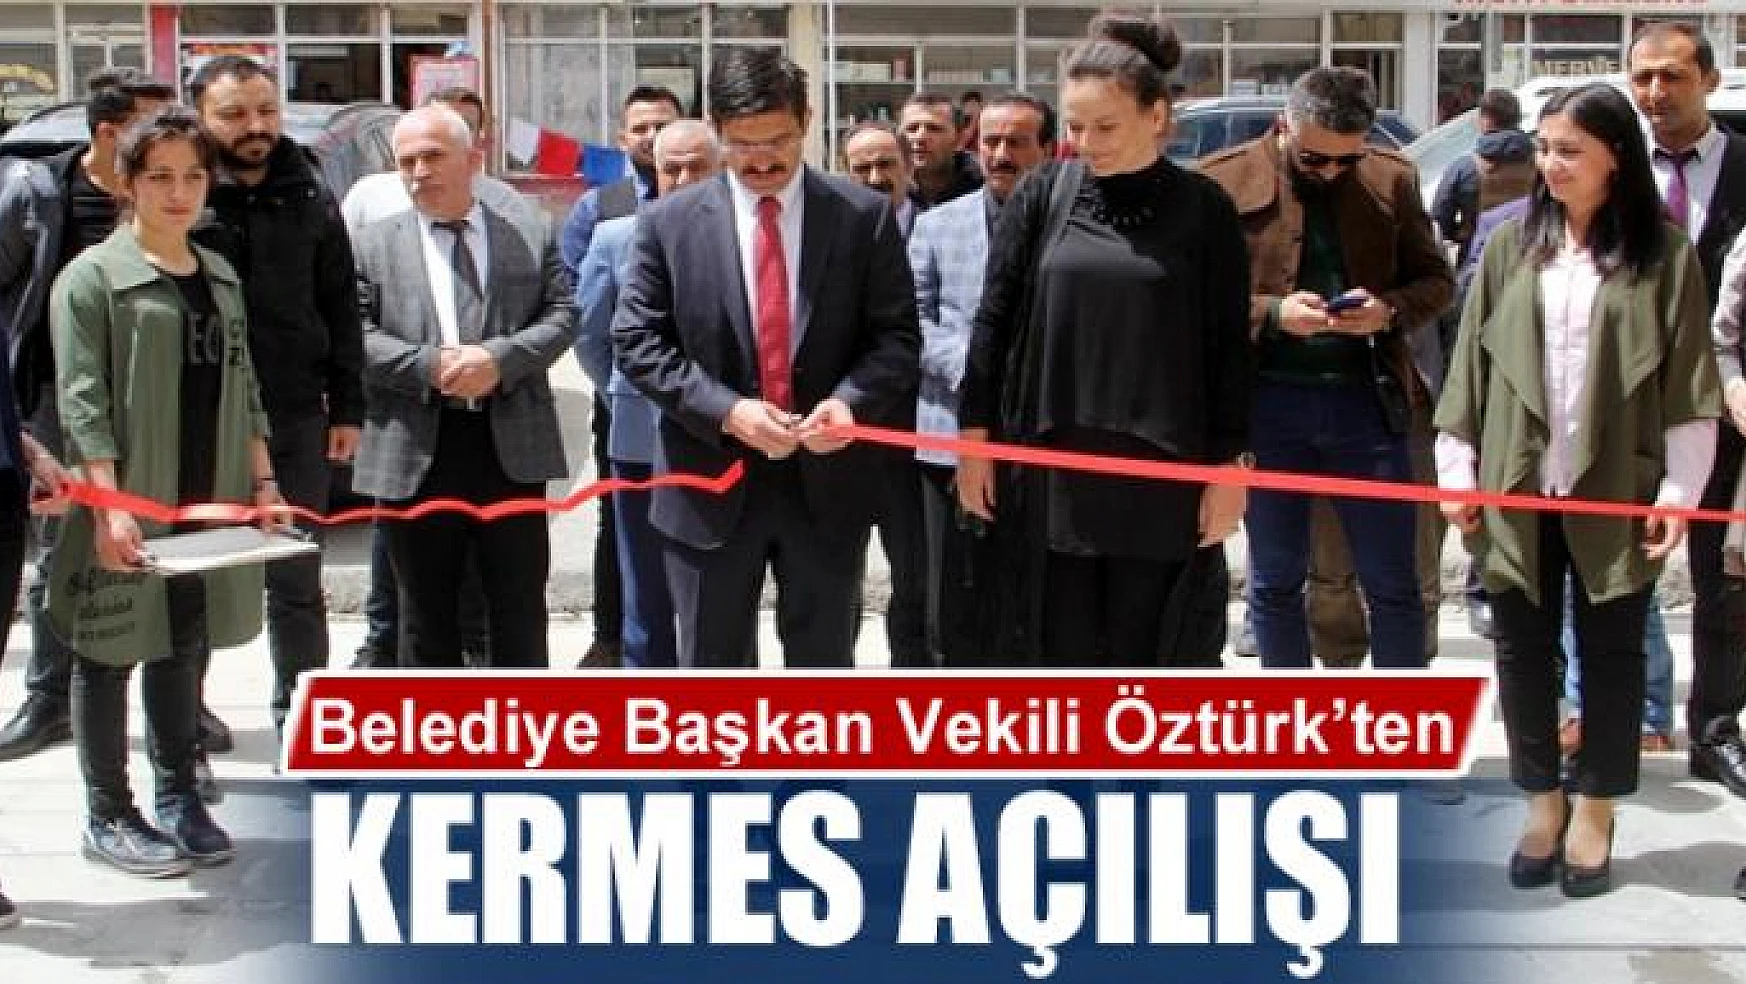 Belediye Başkan Vekili Öztürk'ten kermes açılışı